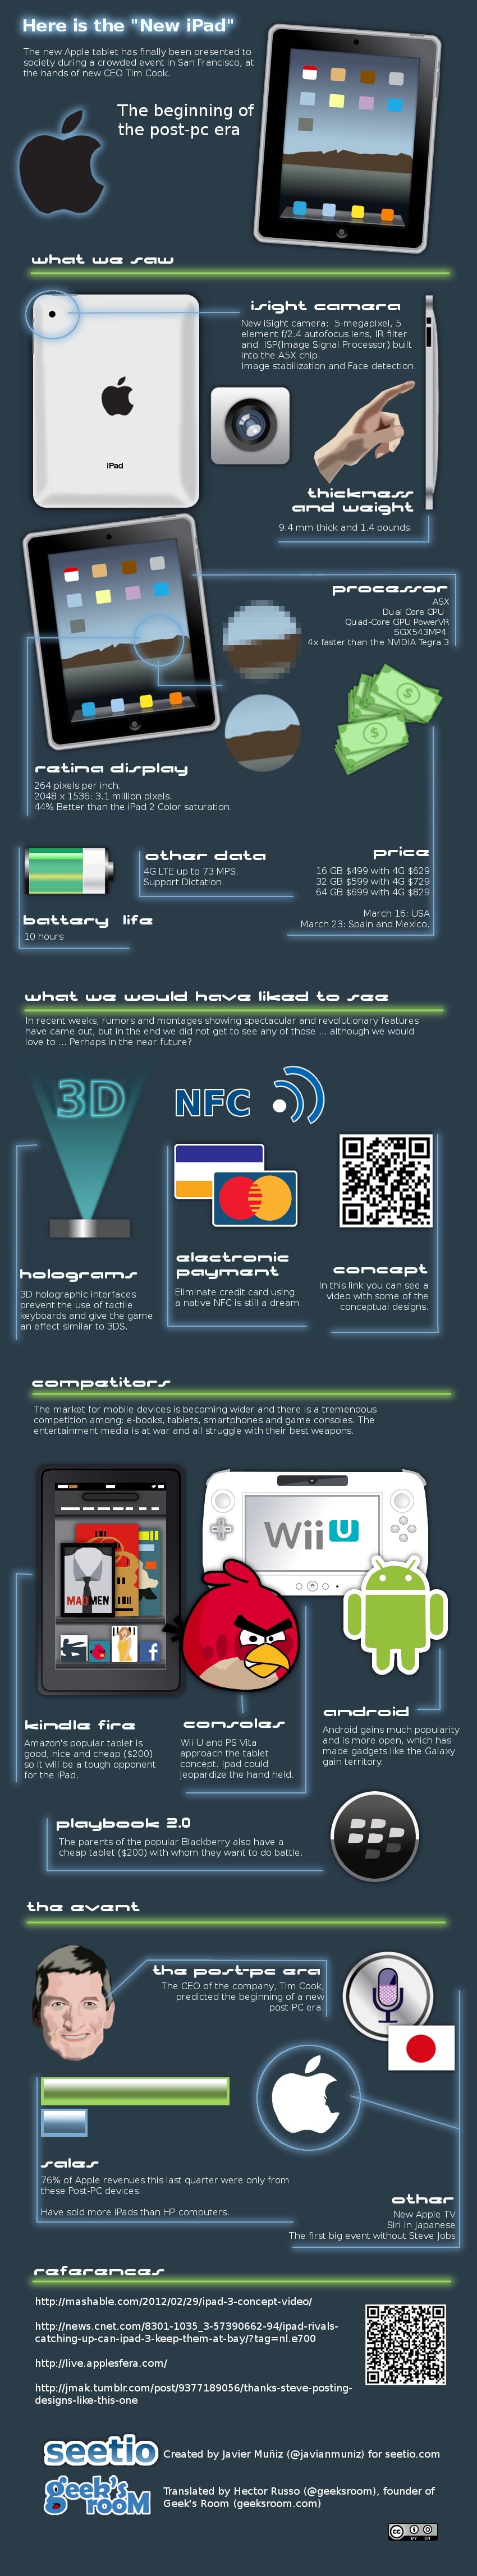 the-new-ipad-infographic